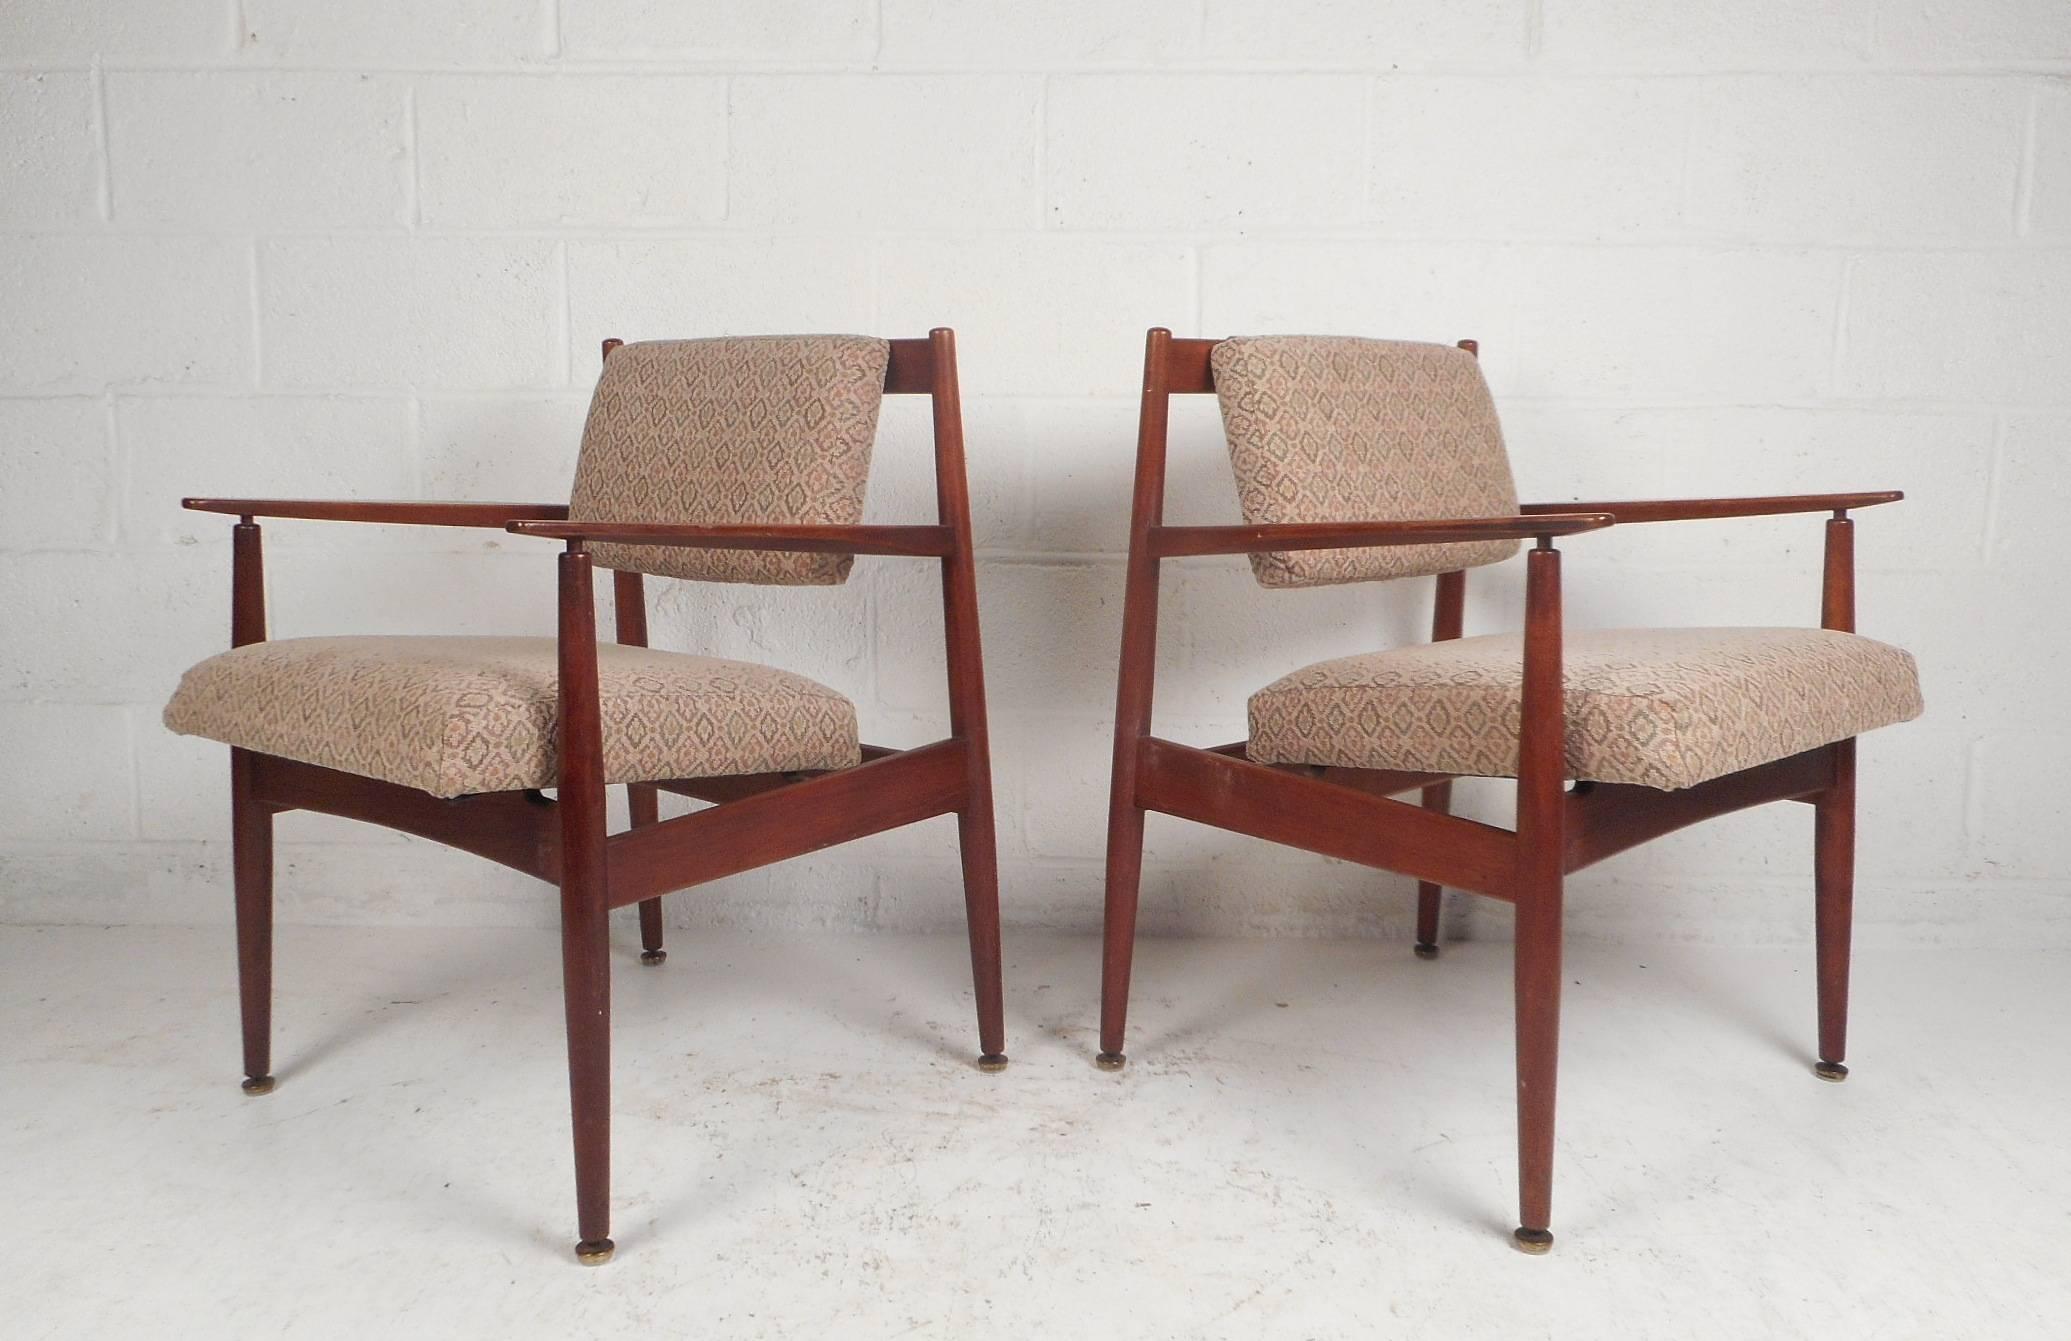 Cette superbe paire de fauteuils de style Mid-Century Modern de Jens Risom Design se caractérise par une assise au rembourrage extrêmement épais, un dossier de style flottant et des accoudoirs sculptés. Un cadre robuste en noyer et un joli